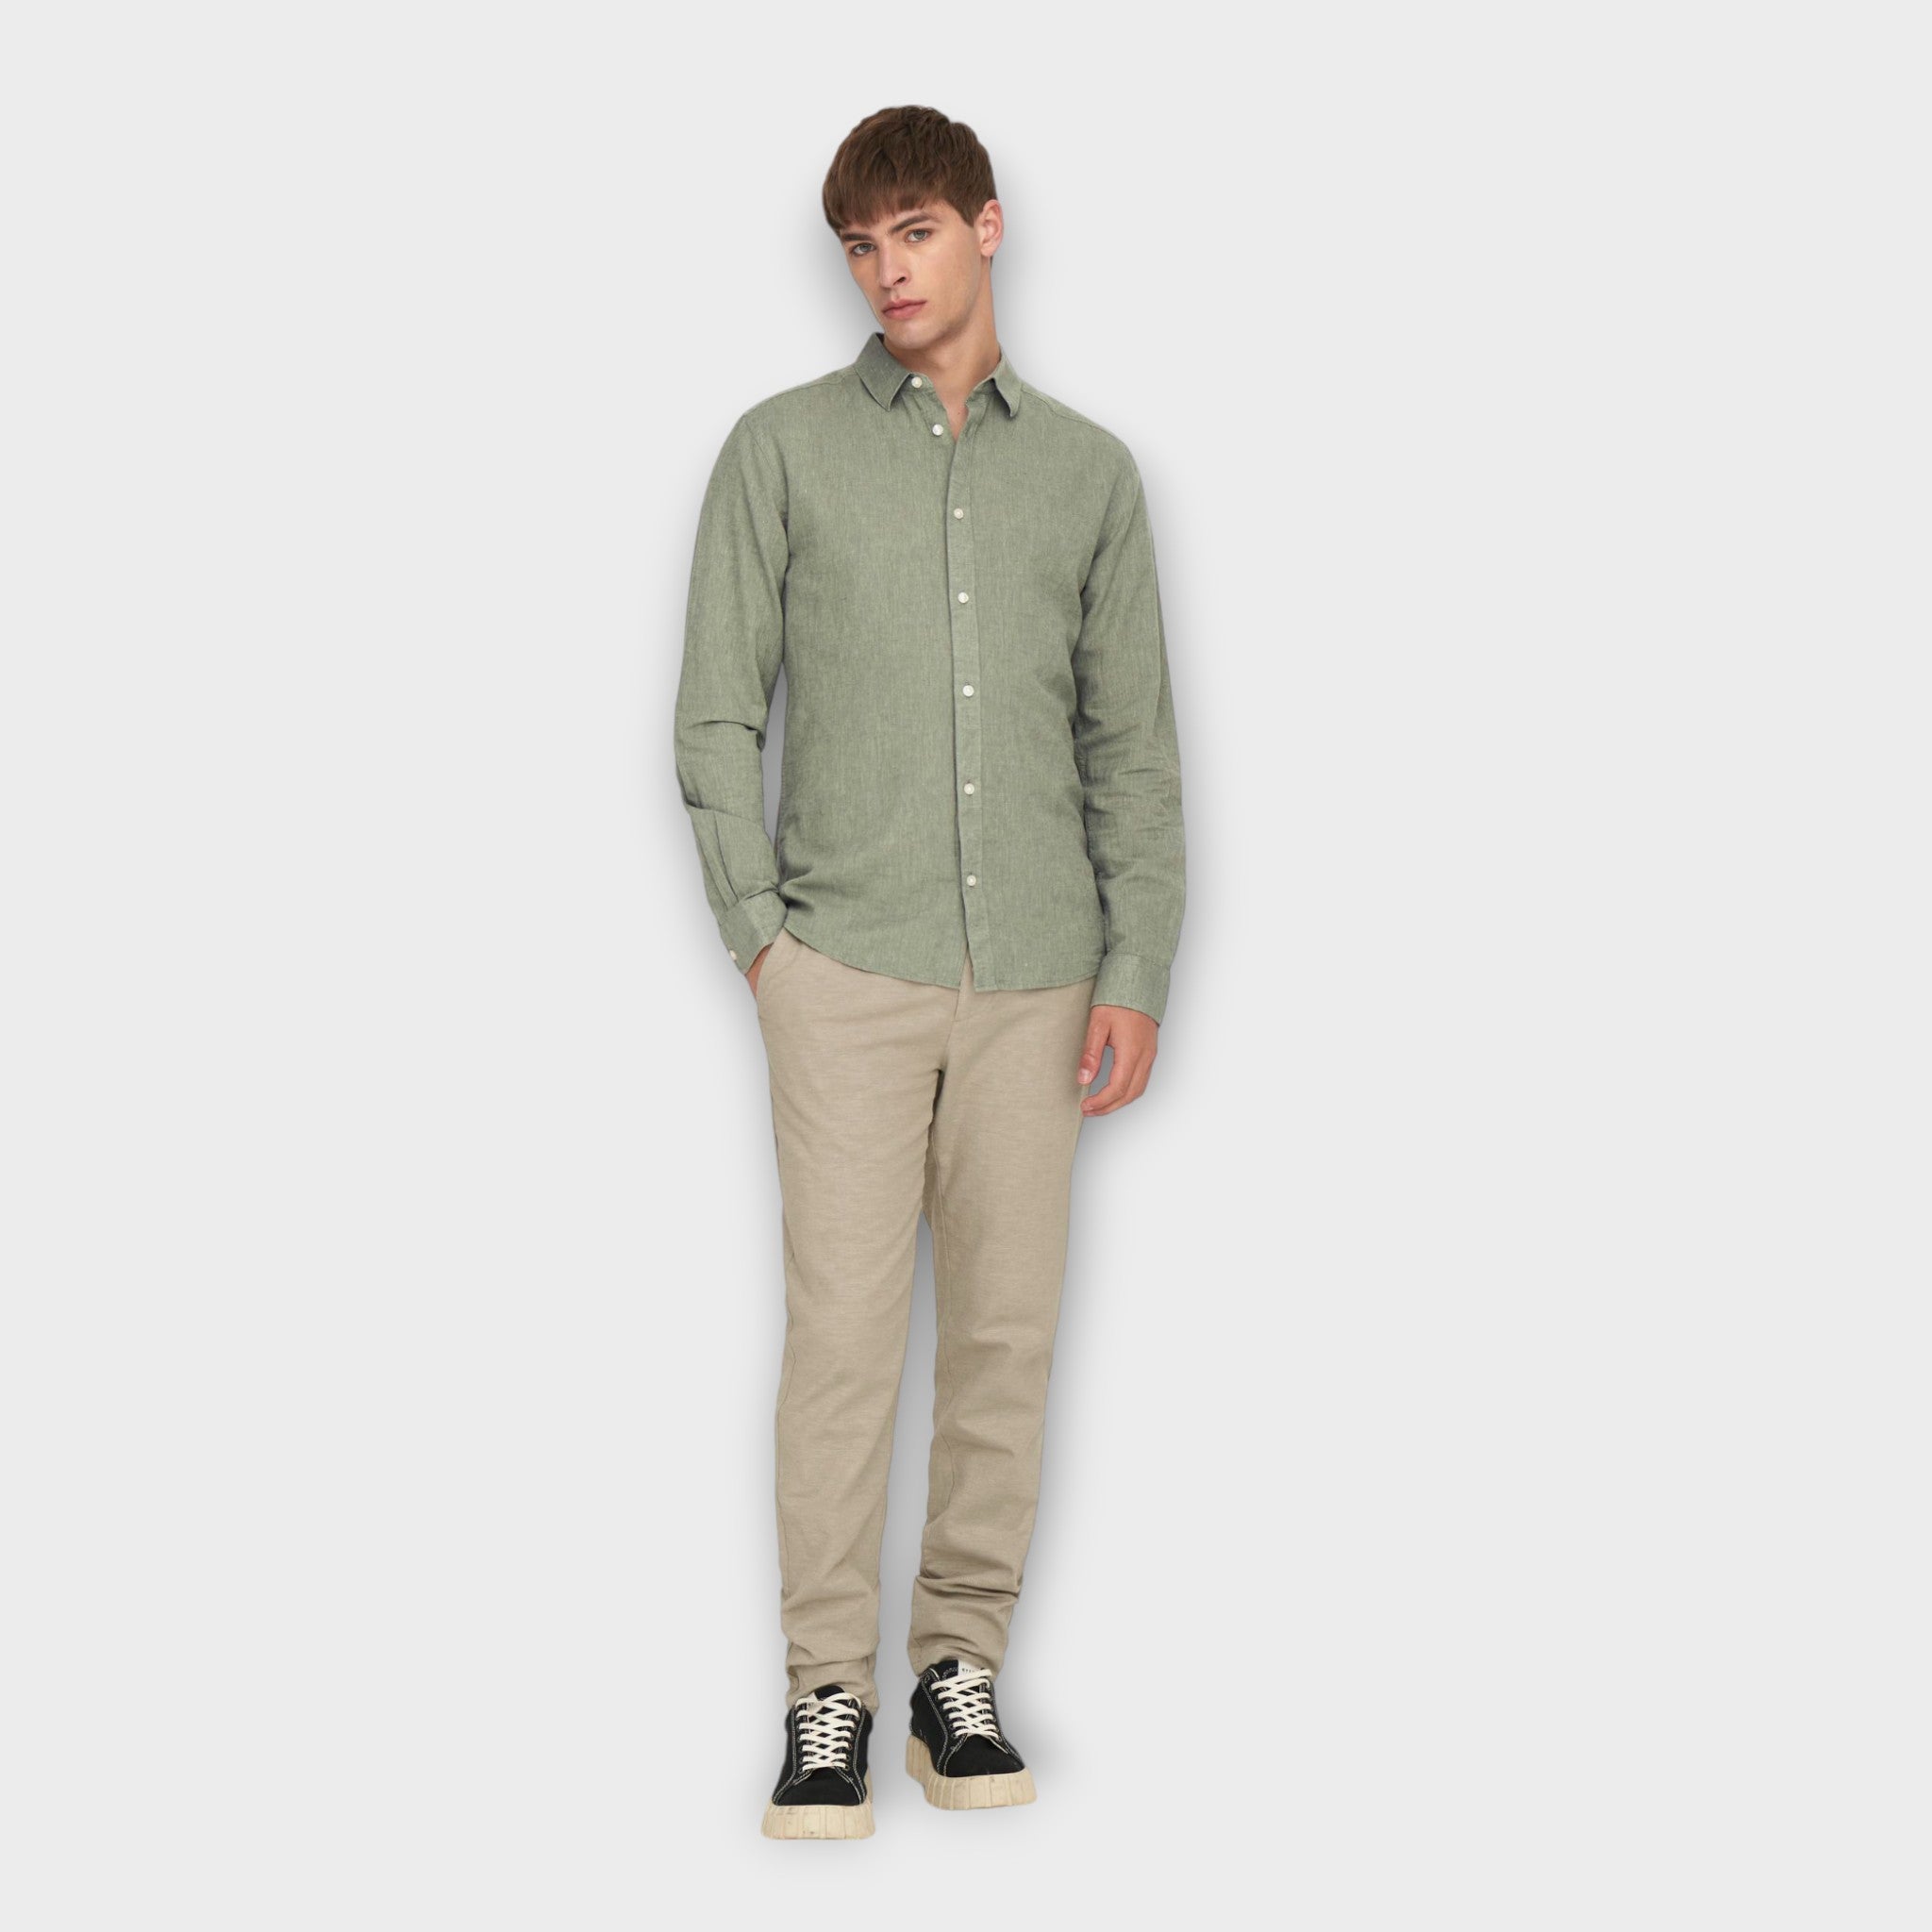 Only and Sons Caiden  LS Solid Linen Shirt  Swamp, langærmet grøn hørskjorte til mænd. Her set model i fuld figur.